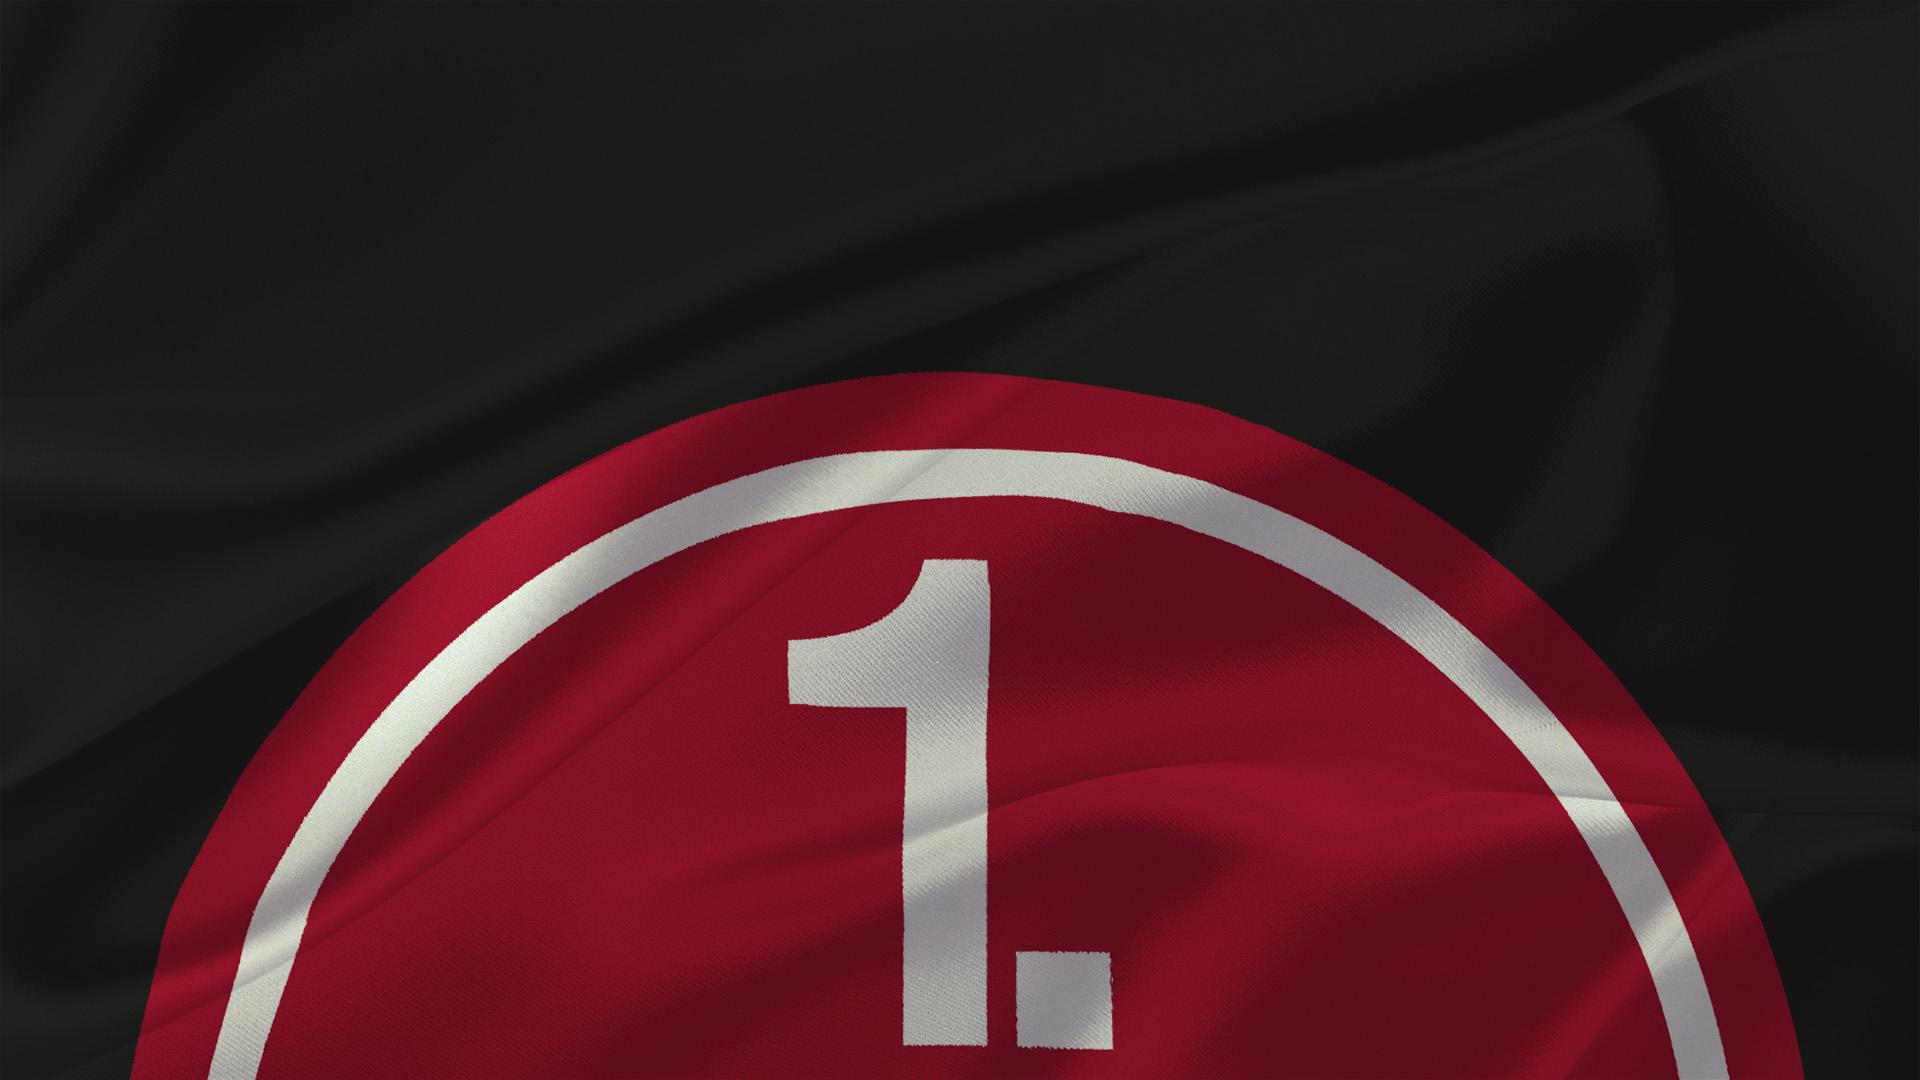 1. FC Nürnberg (FCN)